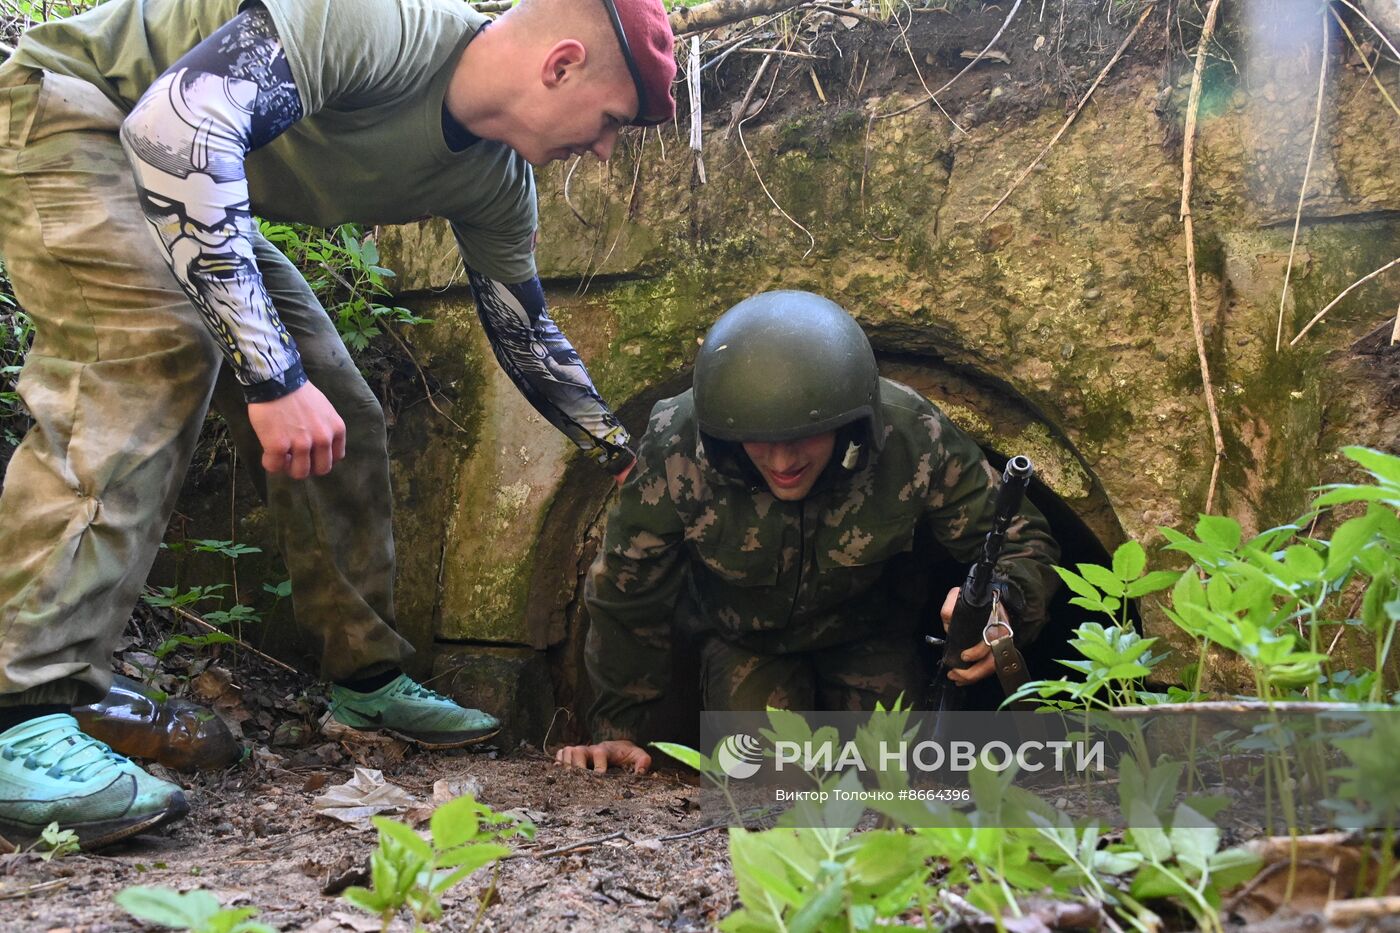 Экзамен на право ношения крапового берета военнослужащими внутренних войск Белоруссии